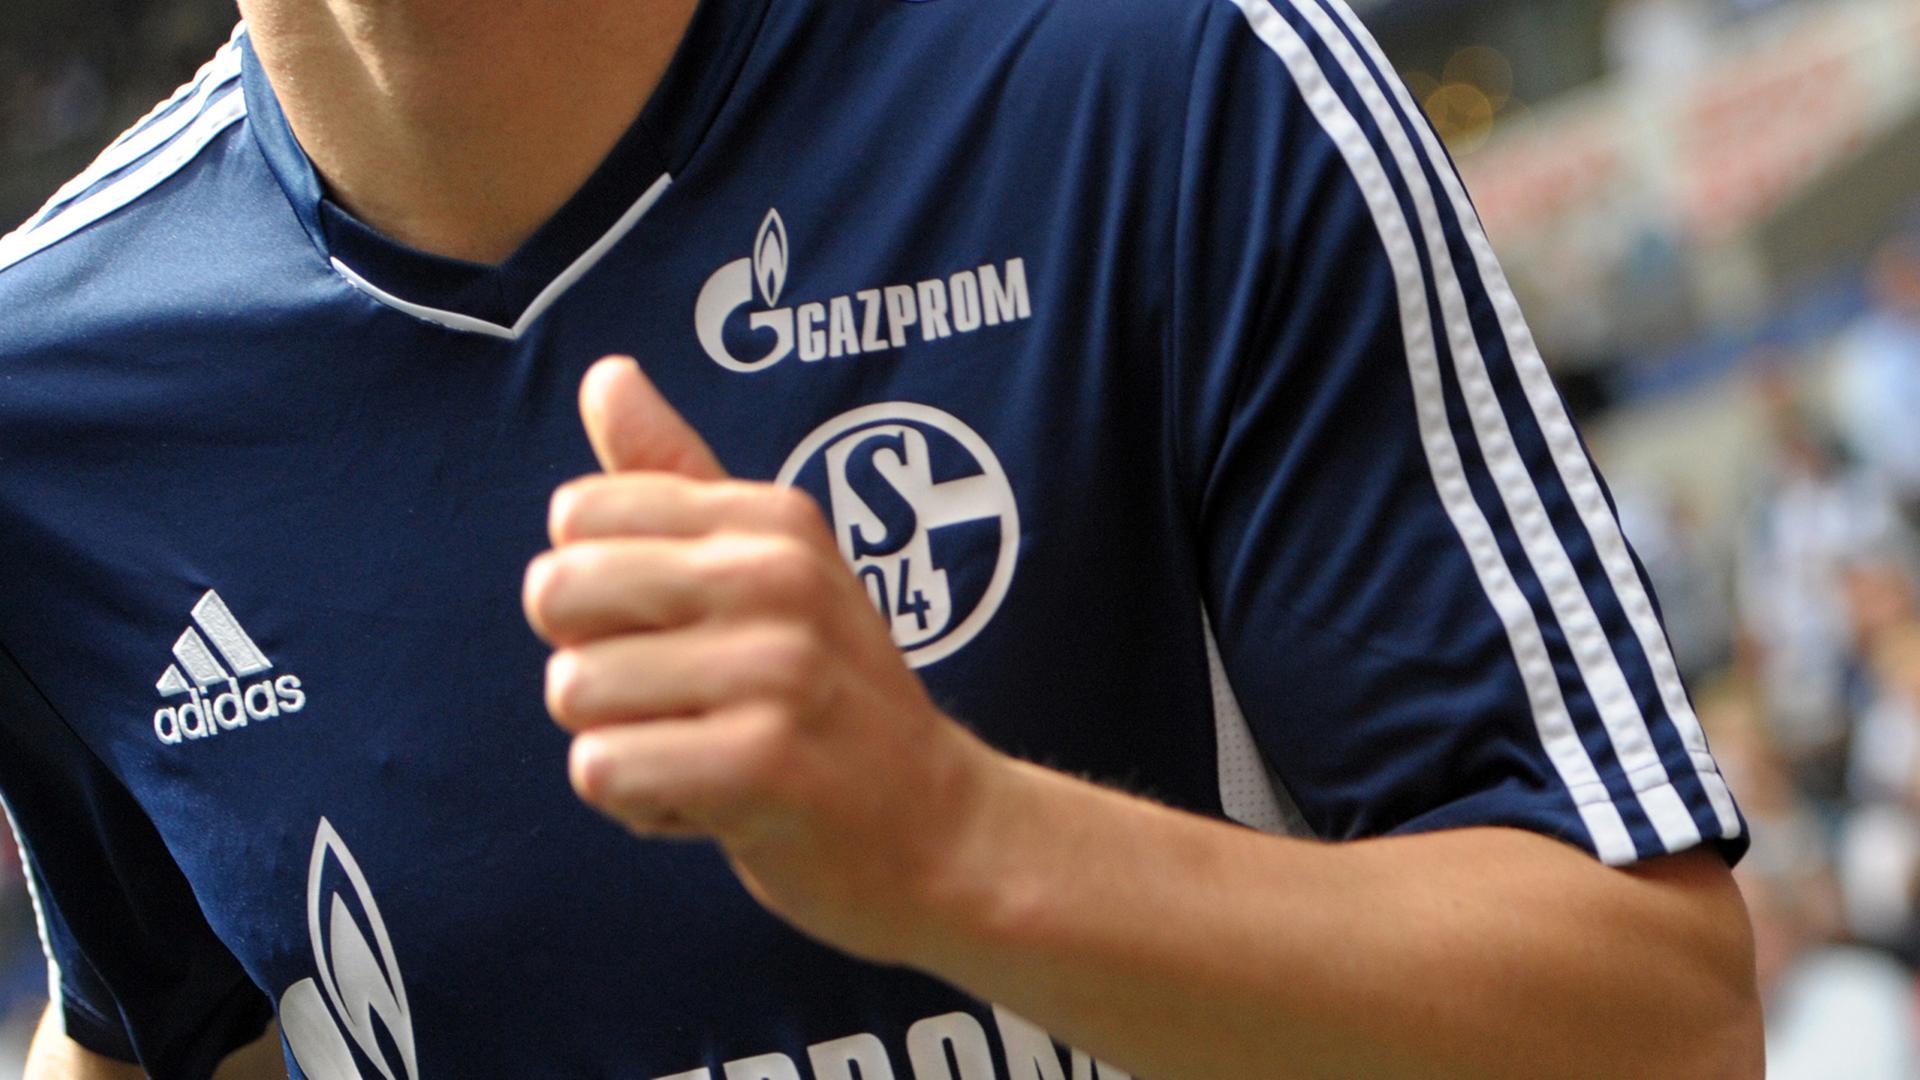 Ein Spieler des FC Schalke 04 trägt das Trikot mit dem Logo des Sponsors Gazprom.